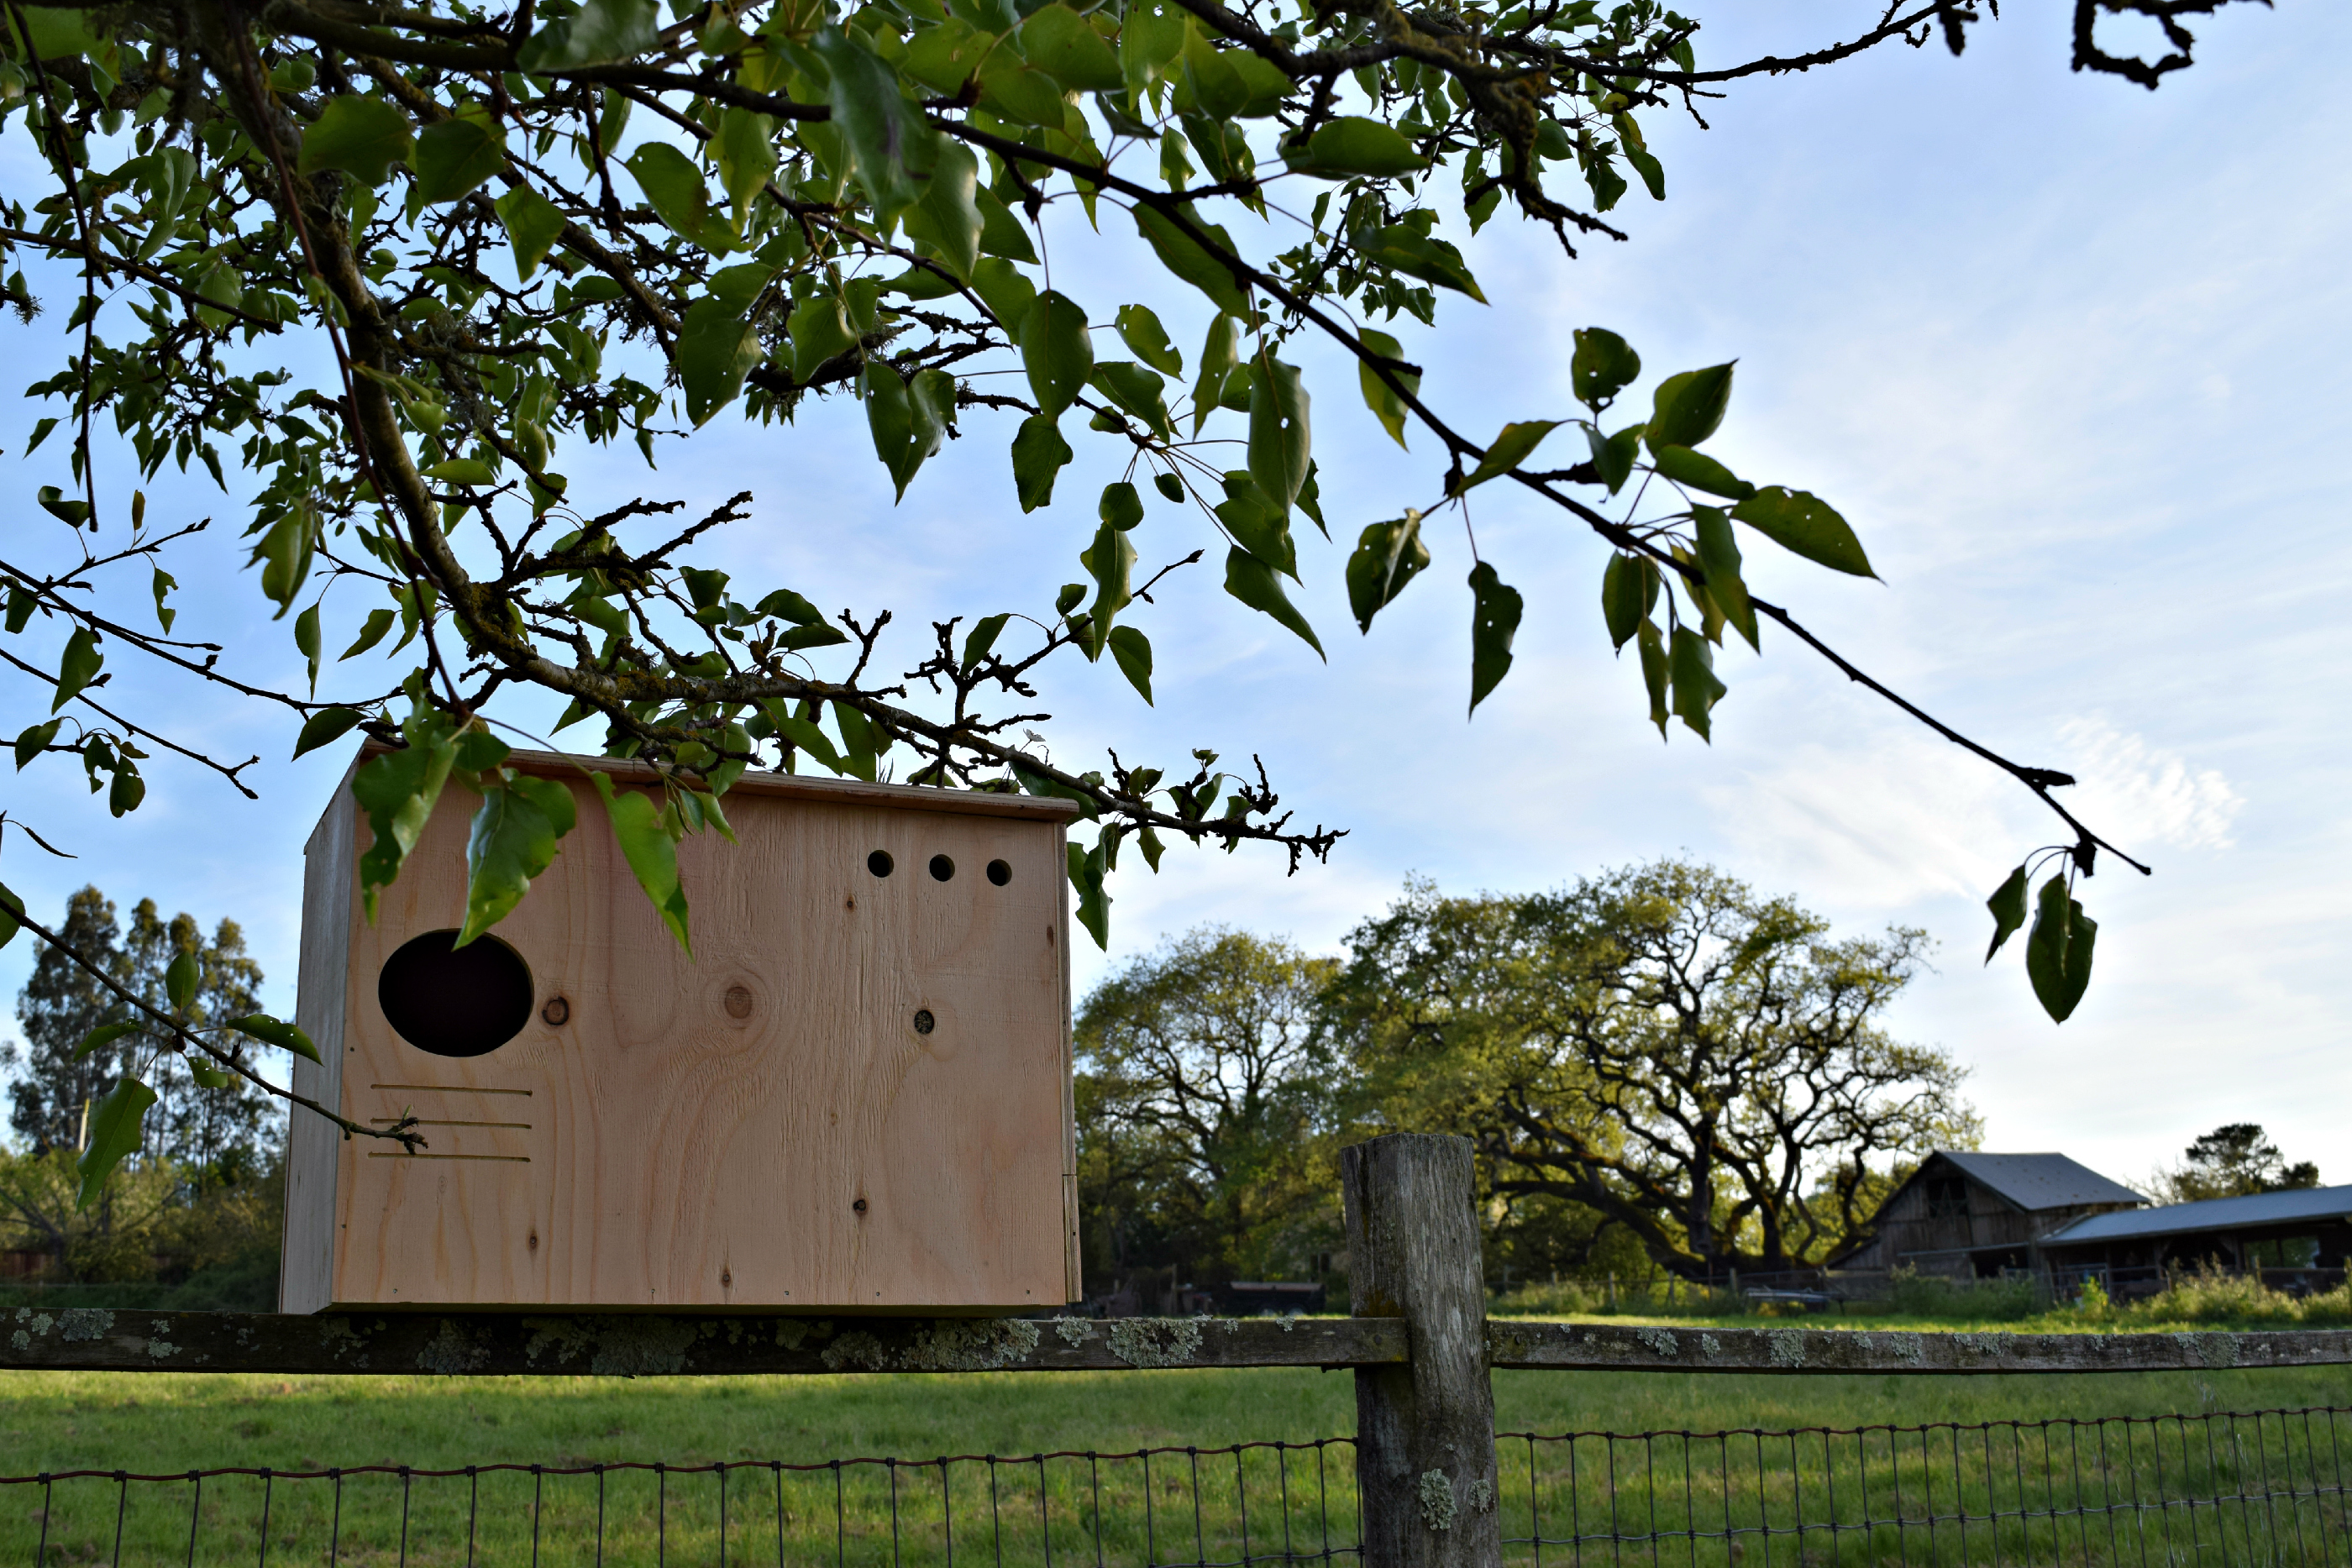 The Owl Abode owl box kit